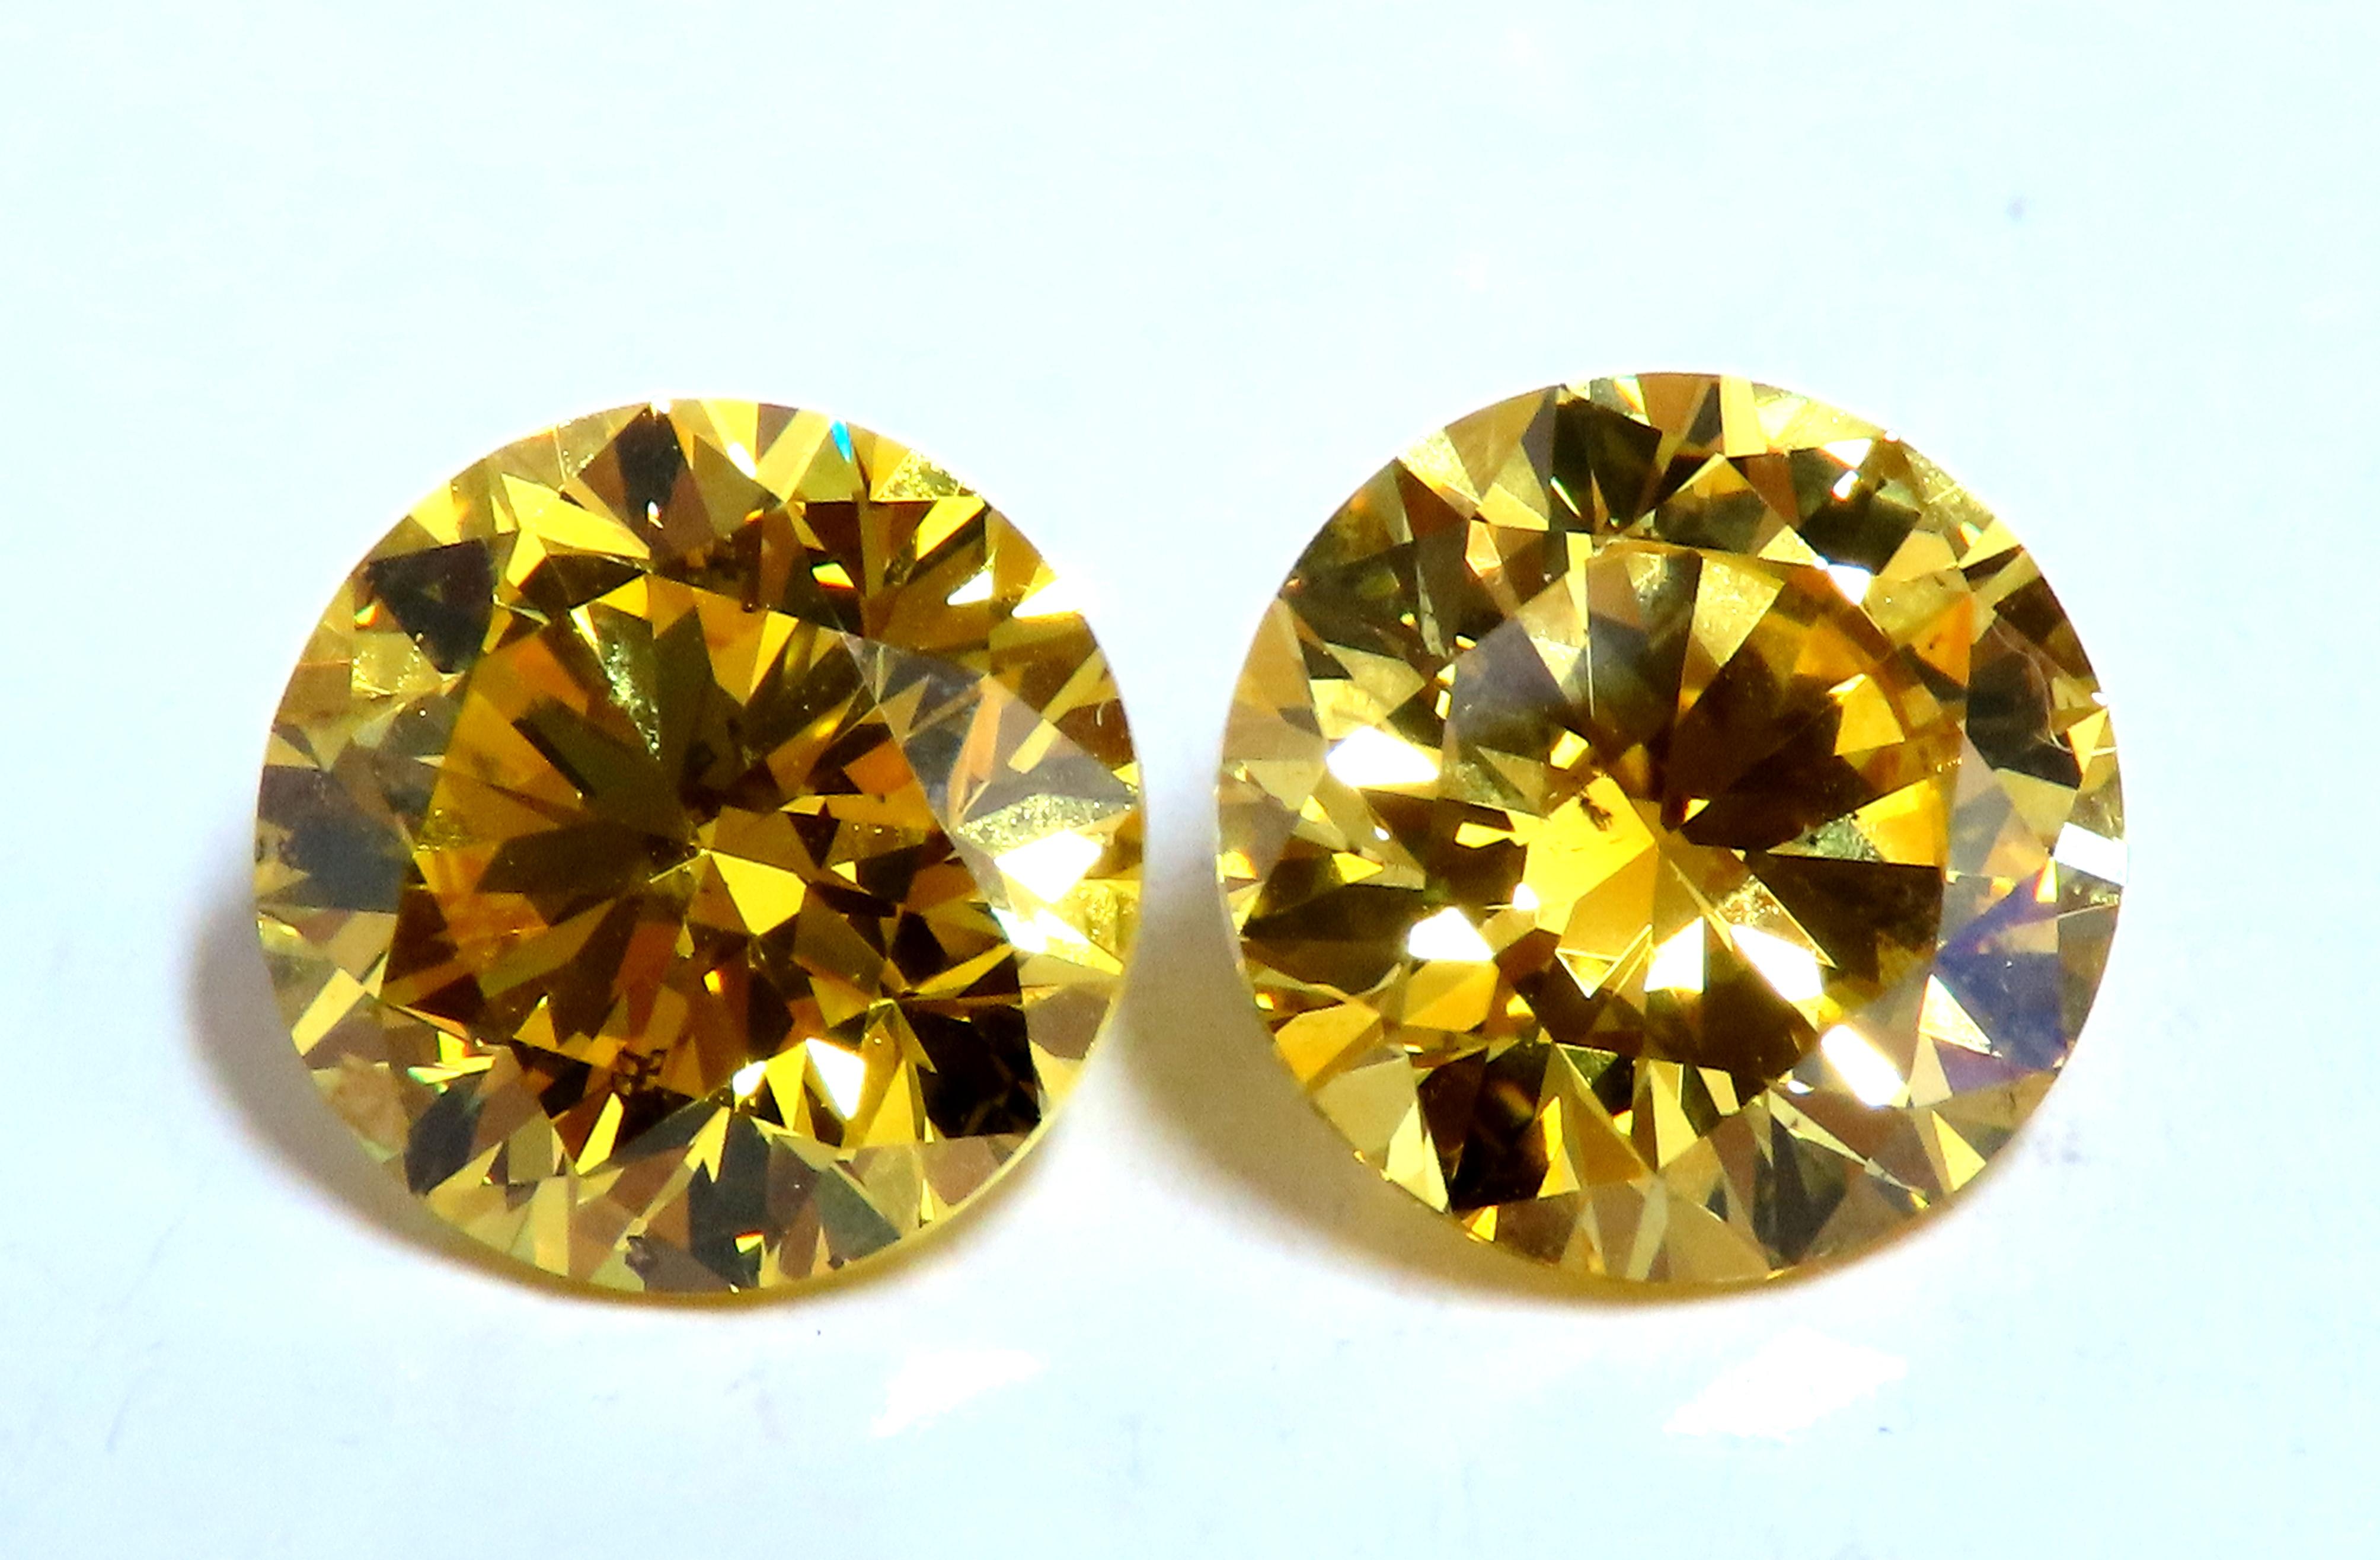 Diamants de 2,05 ct et 2,01 ct de couleur naturelle jaune vif certifiés par la GIA. 
Paire assortie pour les clous.
Les seuls disponibles sur le marché - rares.
Si-1 clarté. 
L'acheteur peut choisir une monture en 18kt ou en platine.
Nous proposons